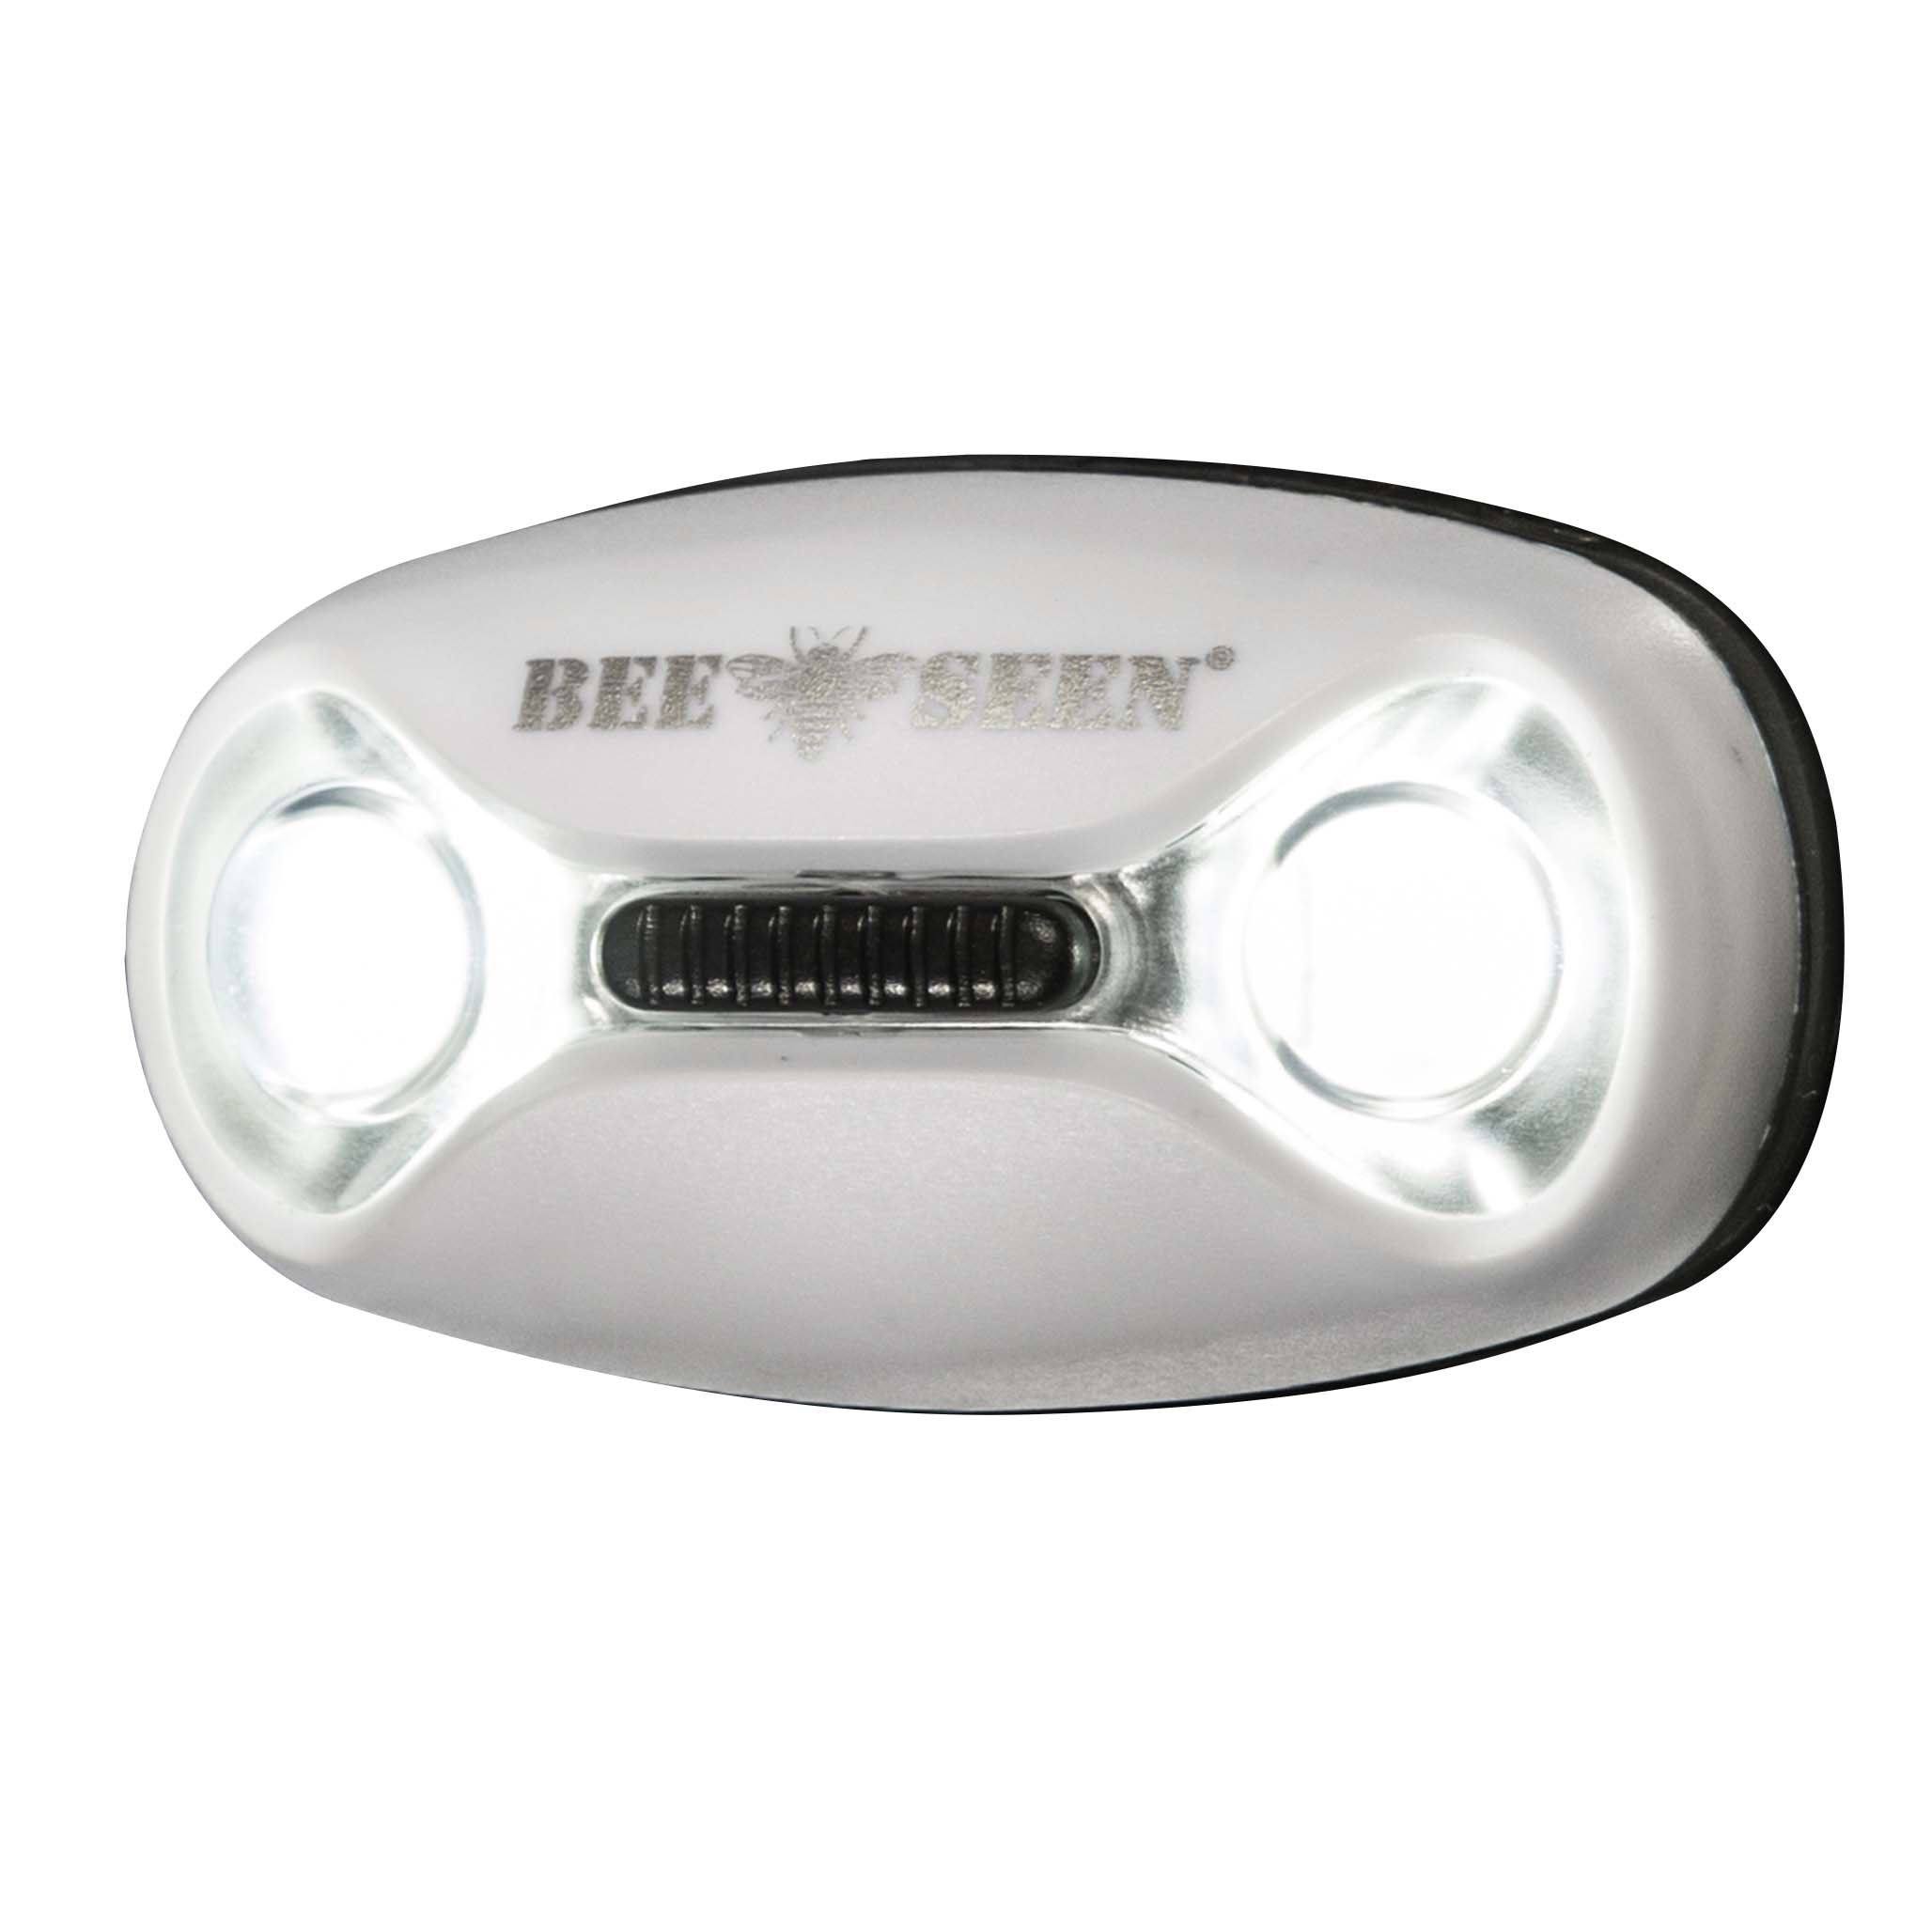 BEE SAFE Led Magnet Light - Sicherheitslicht